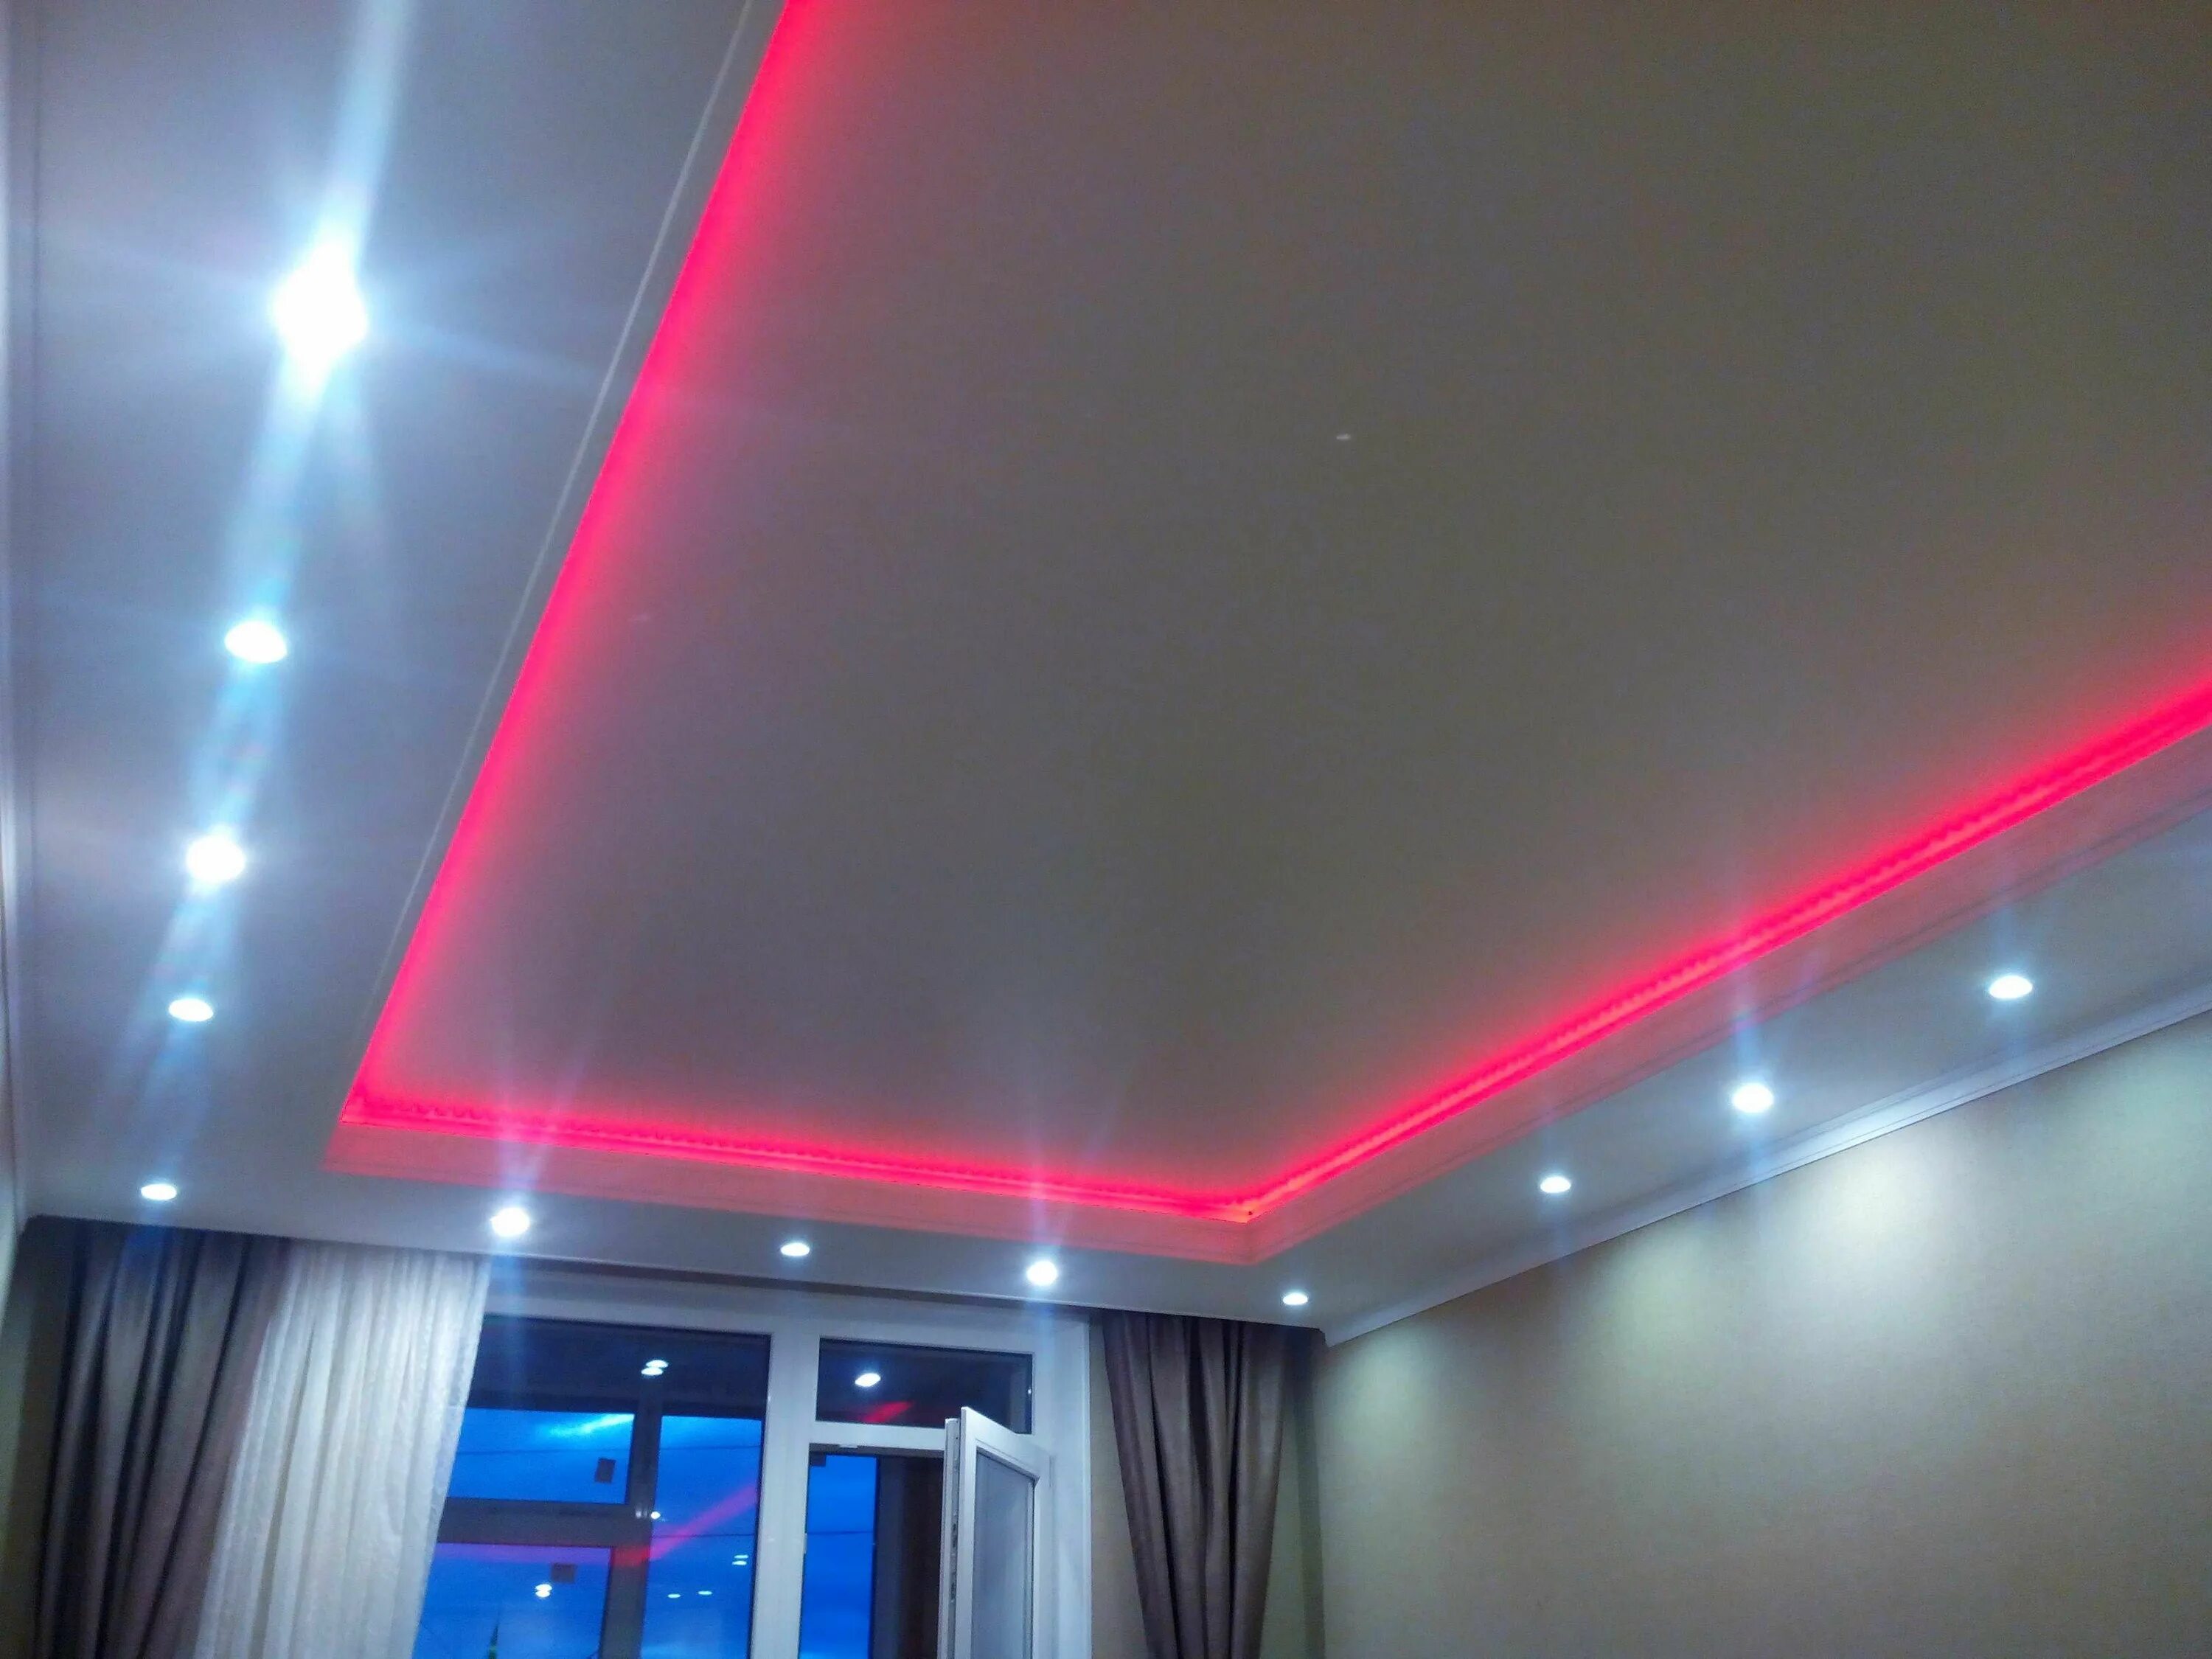 Купить потолки с подсветкой. Потолок с подсветкой. Натяжные потолки с подсветкой. Диодная подсветка потолка. Натяжной потолок со светодиодной подсветкой.